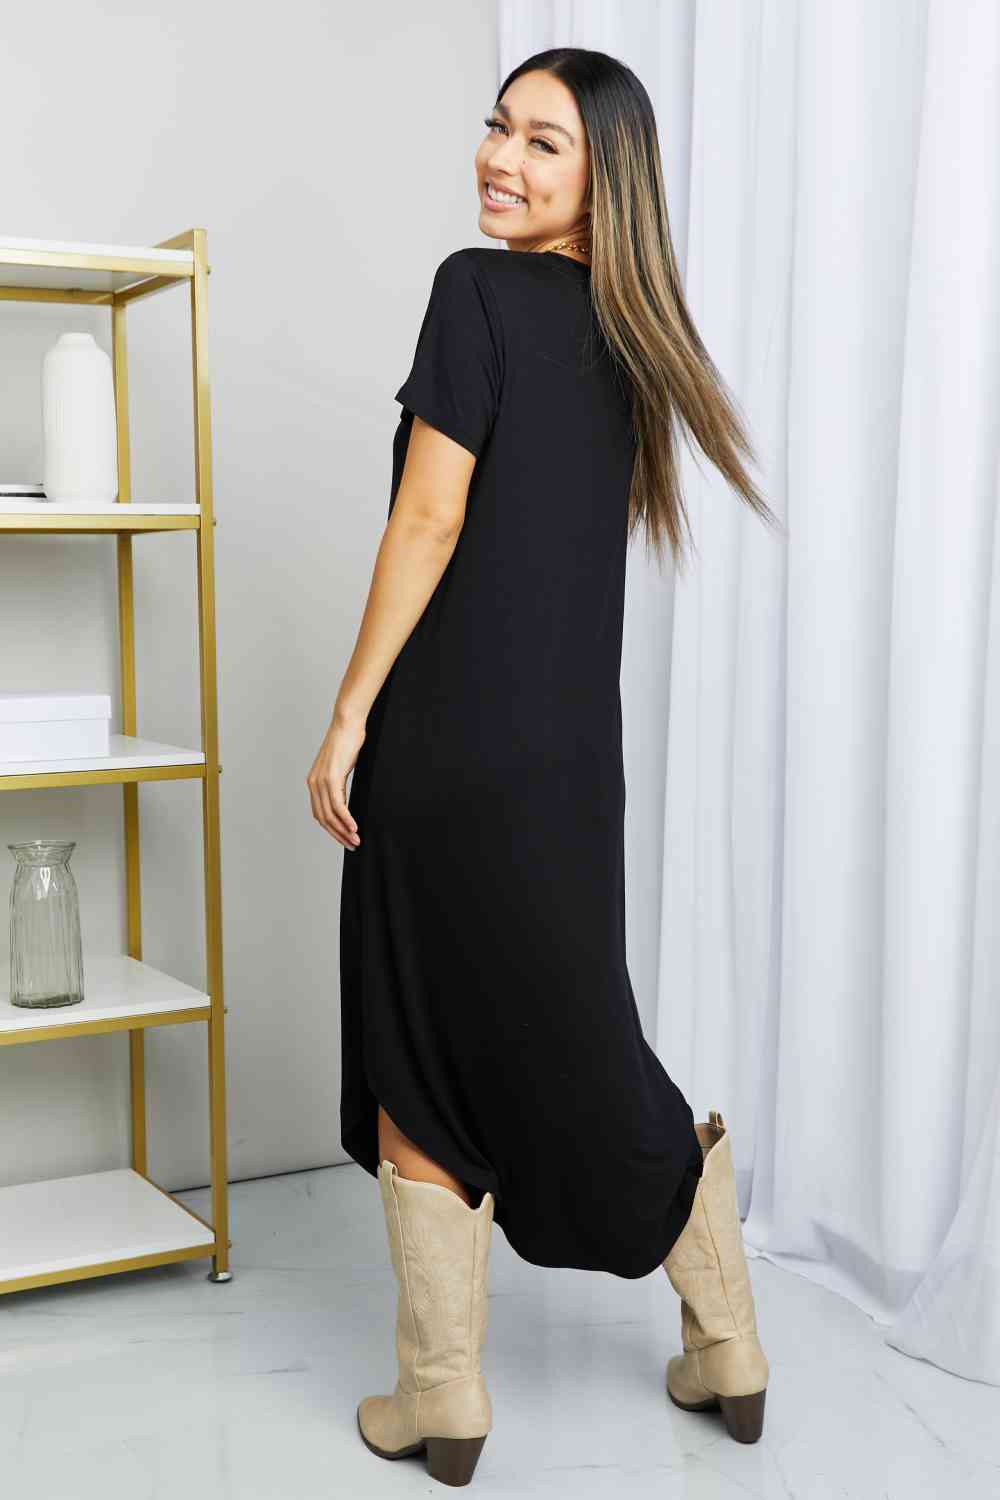 HYFVE V-Neck Short Sleeve Curved Hem Dress in Black  Krazy Heart Designs Boutique   